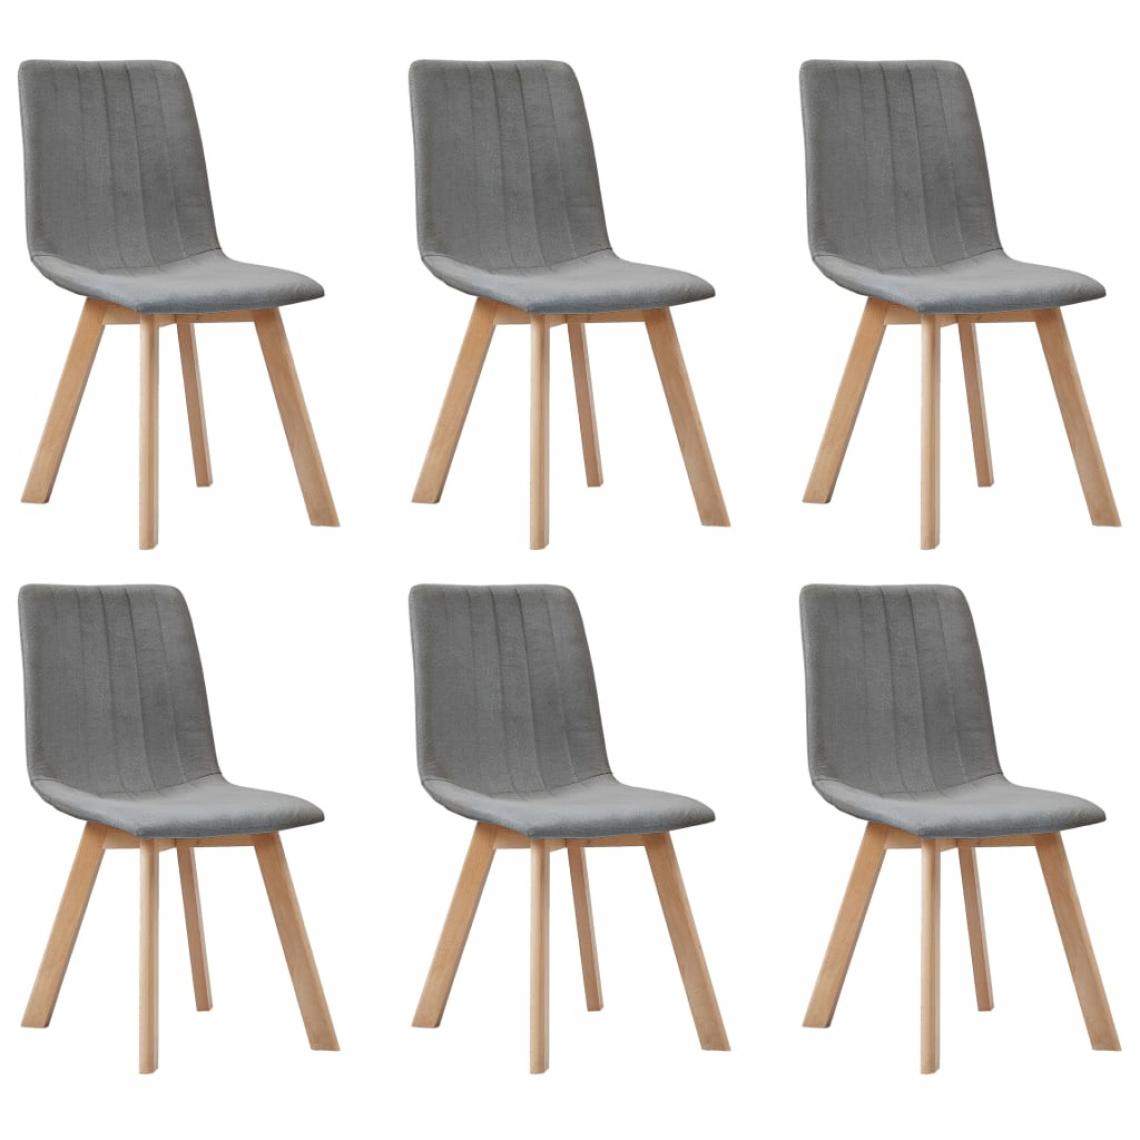 Decoshop26 - Lot de 6 chaises de salle à manger cuisine design moderne tissu gris clair CDS022409 - Chaises